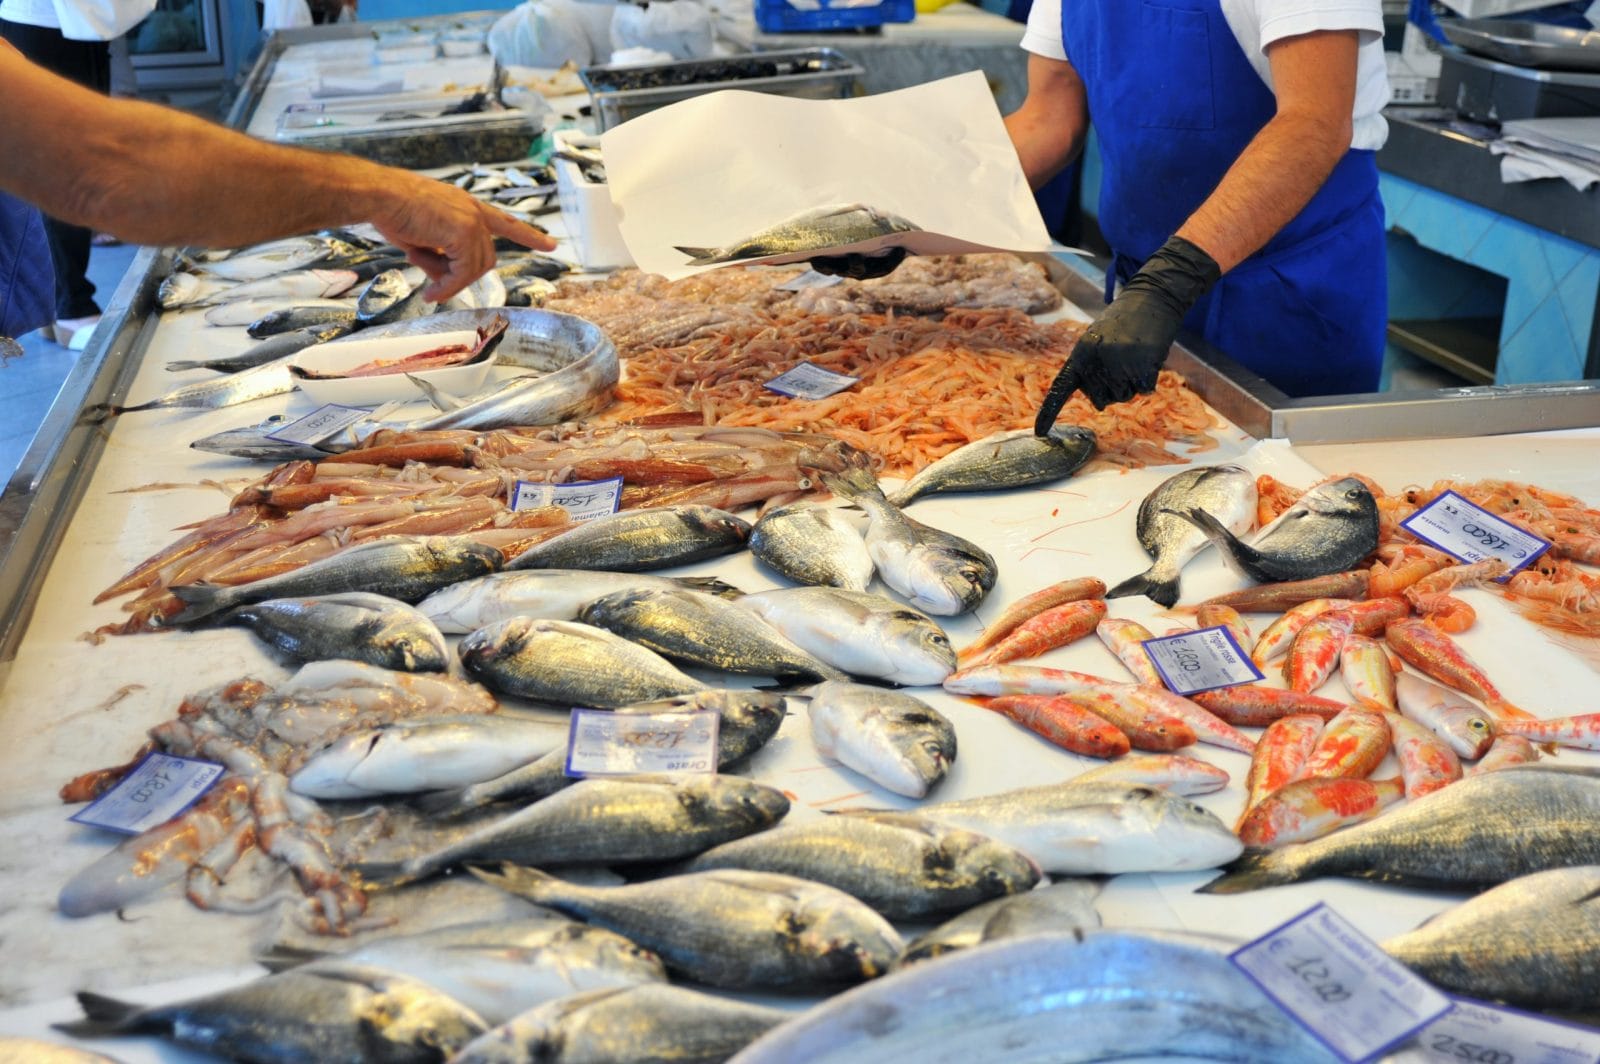 Fish at a seafood market